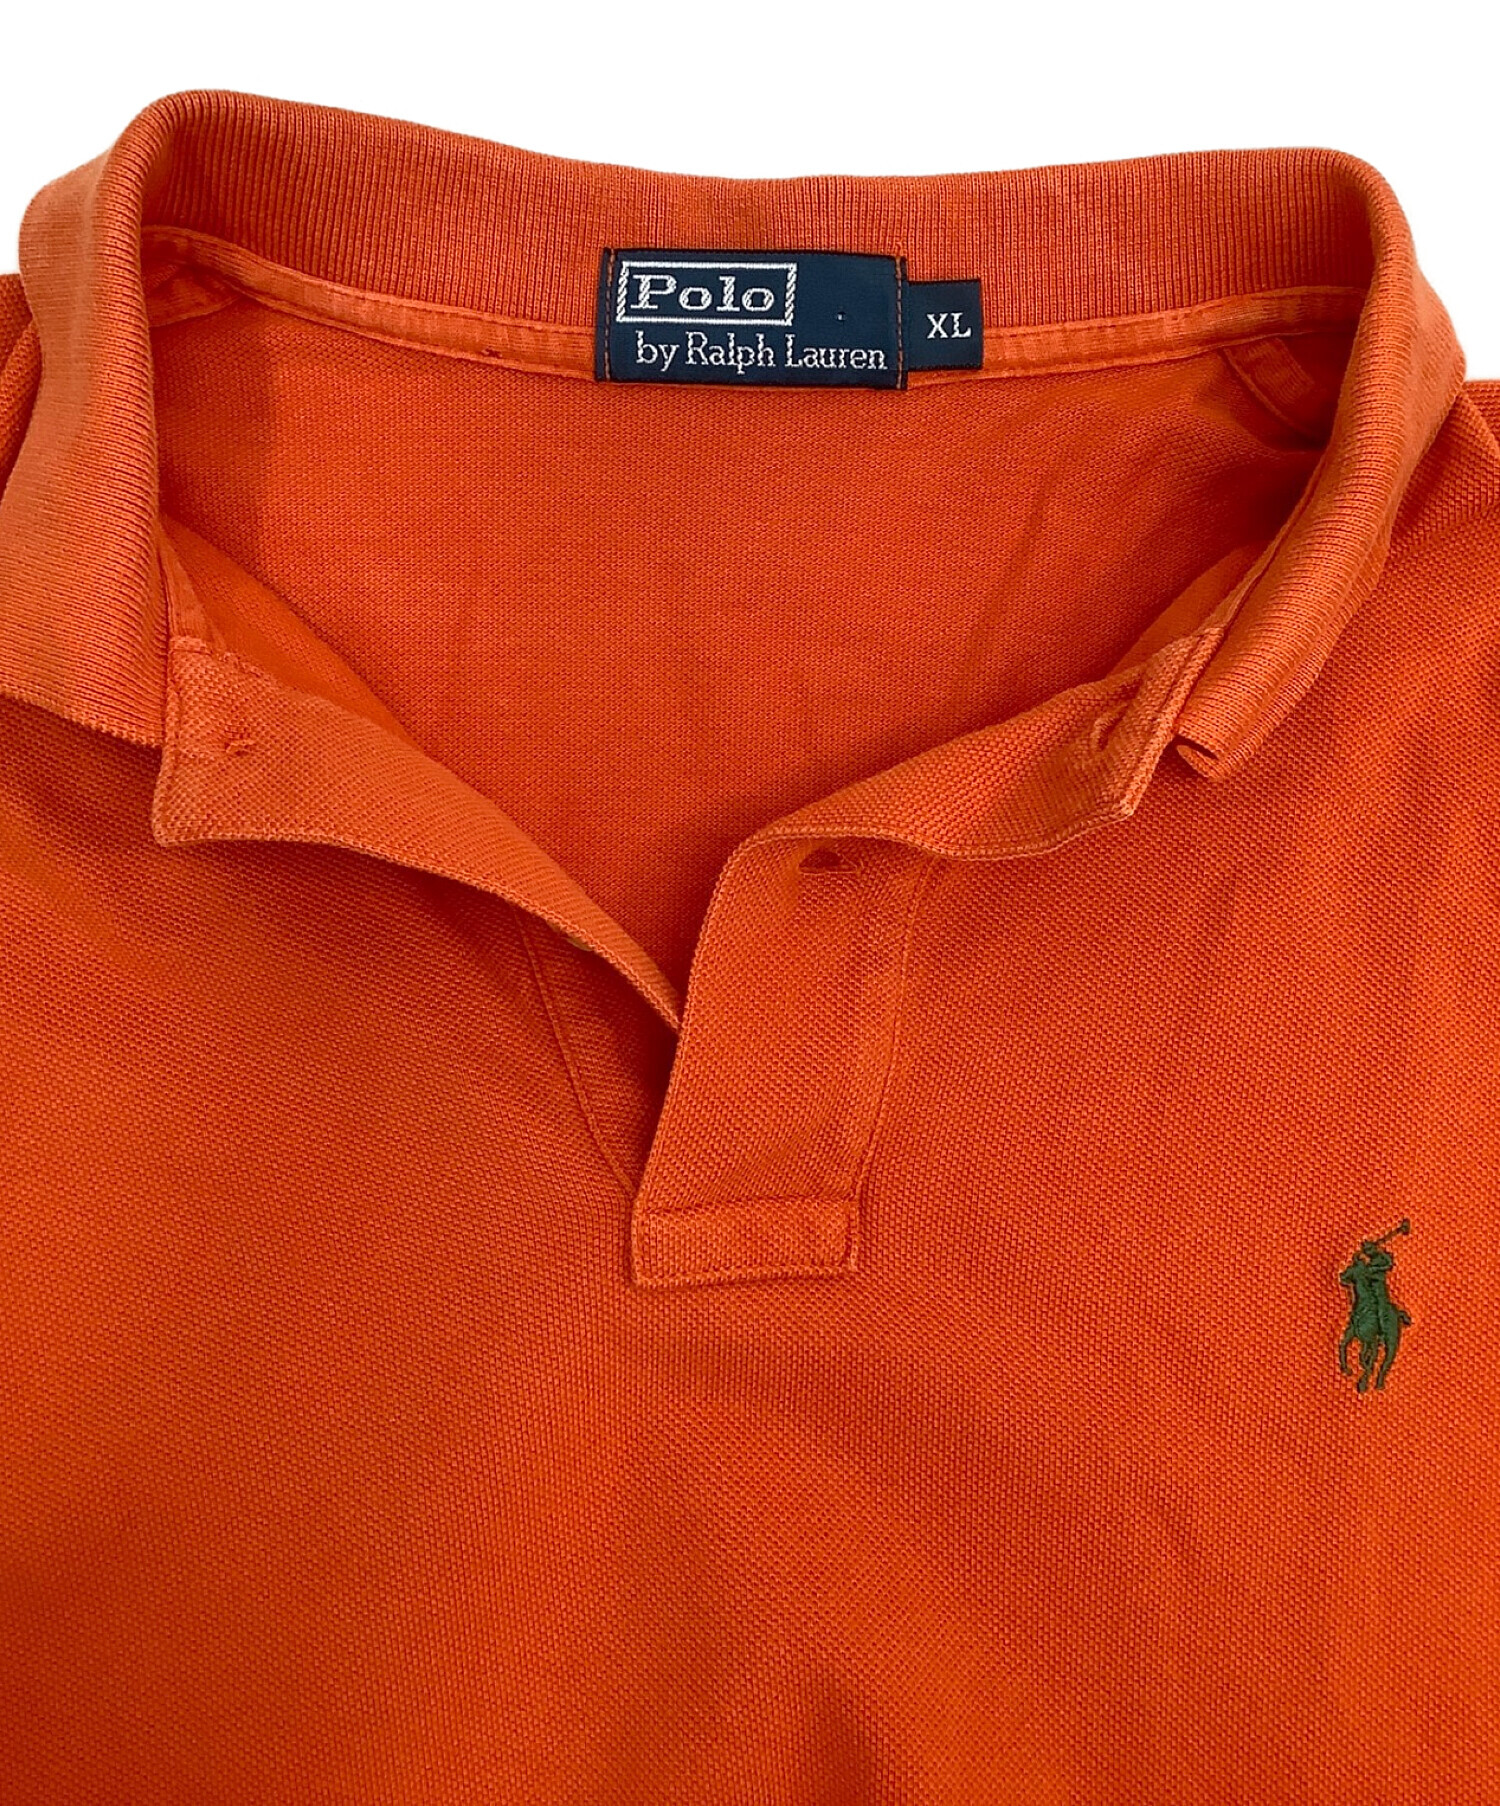 POLO RALPH LAUREN (ポロ・ラルフローレン) ヴィンテージポロシャツ オレンジ サイズ:XL